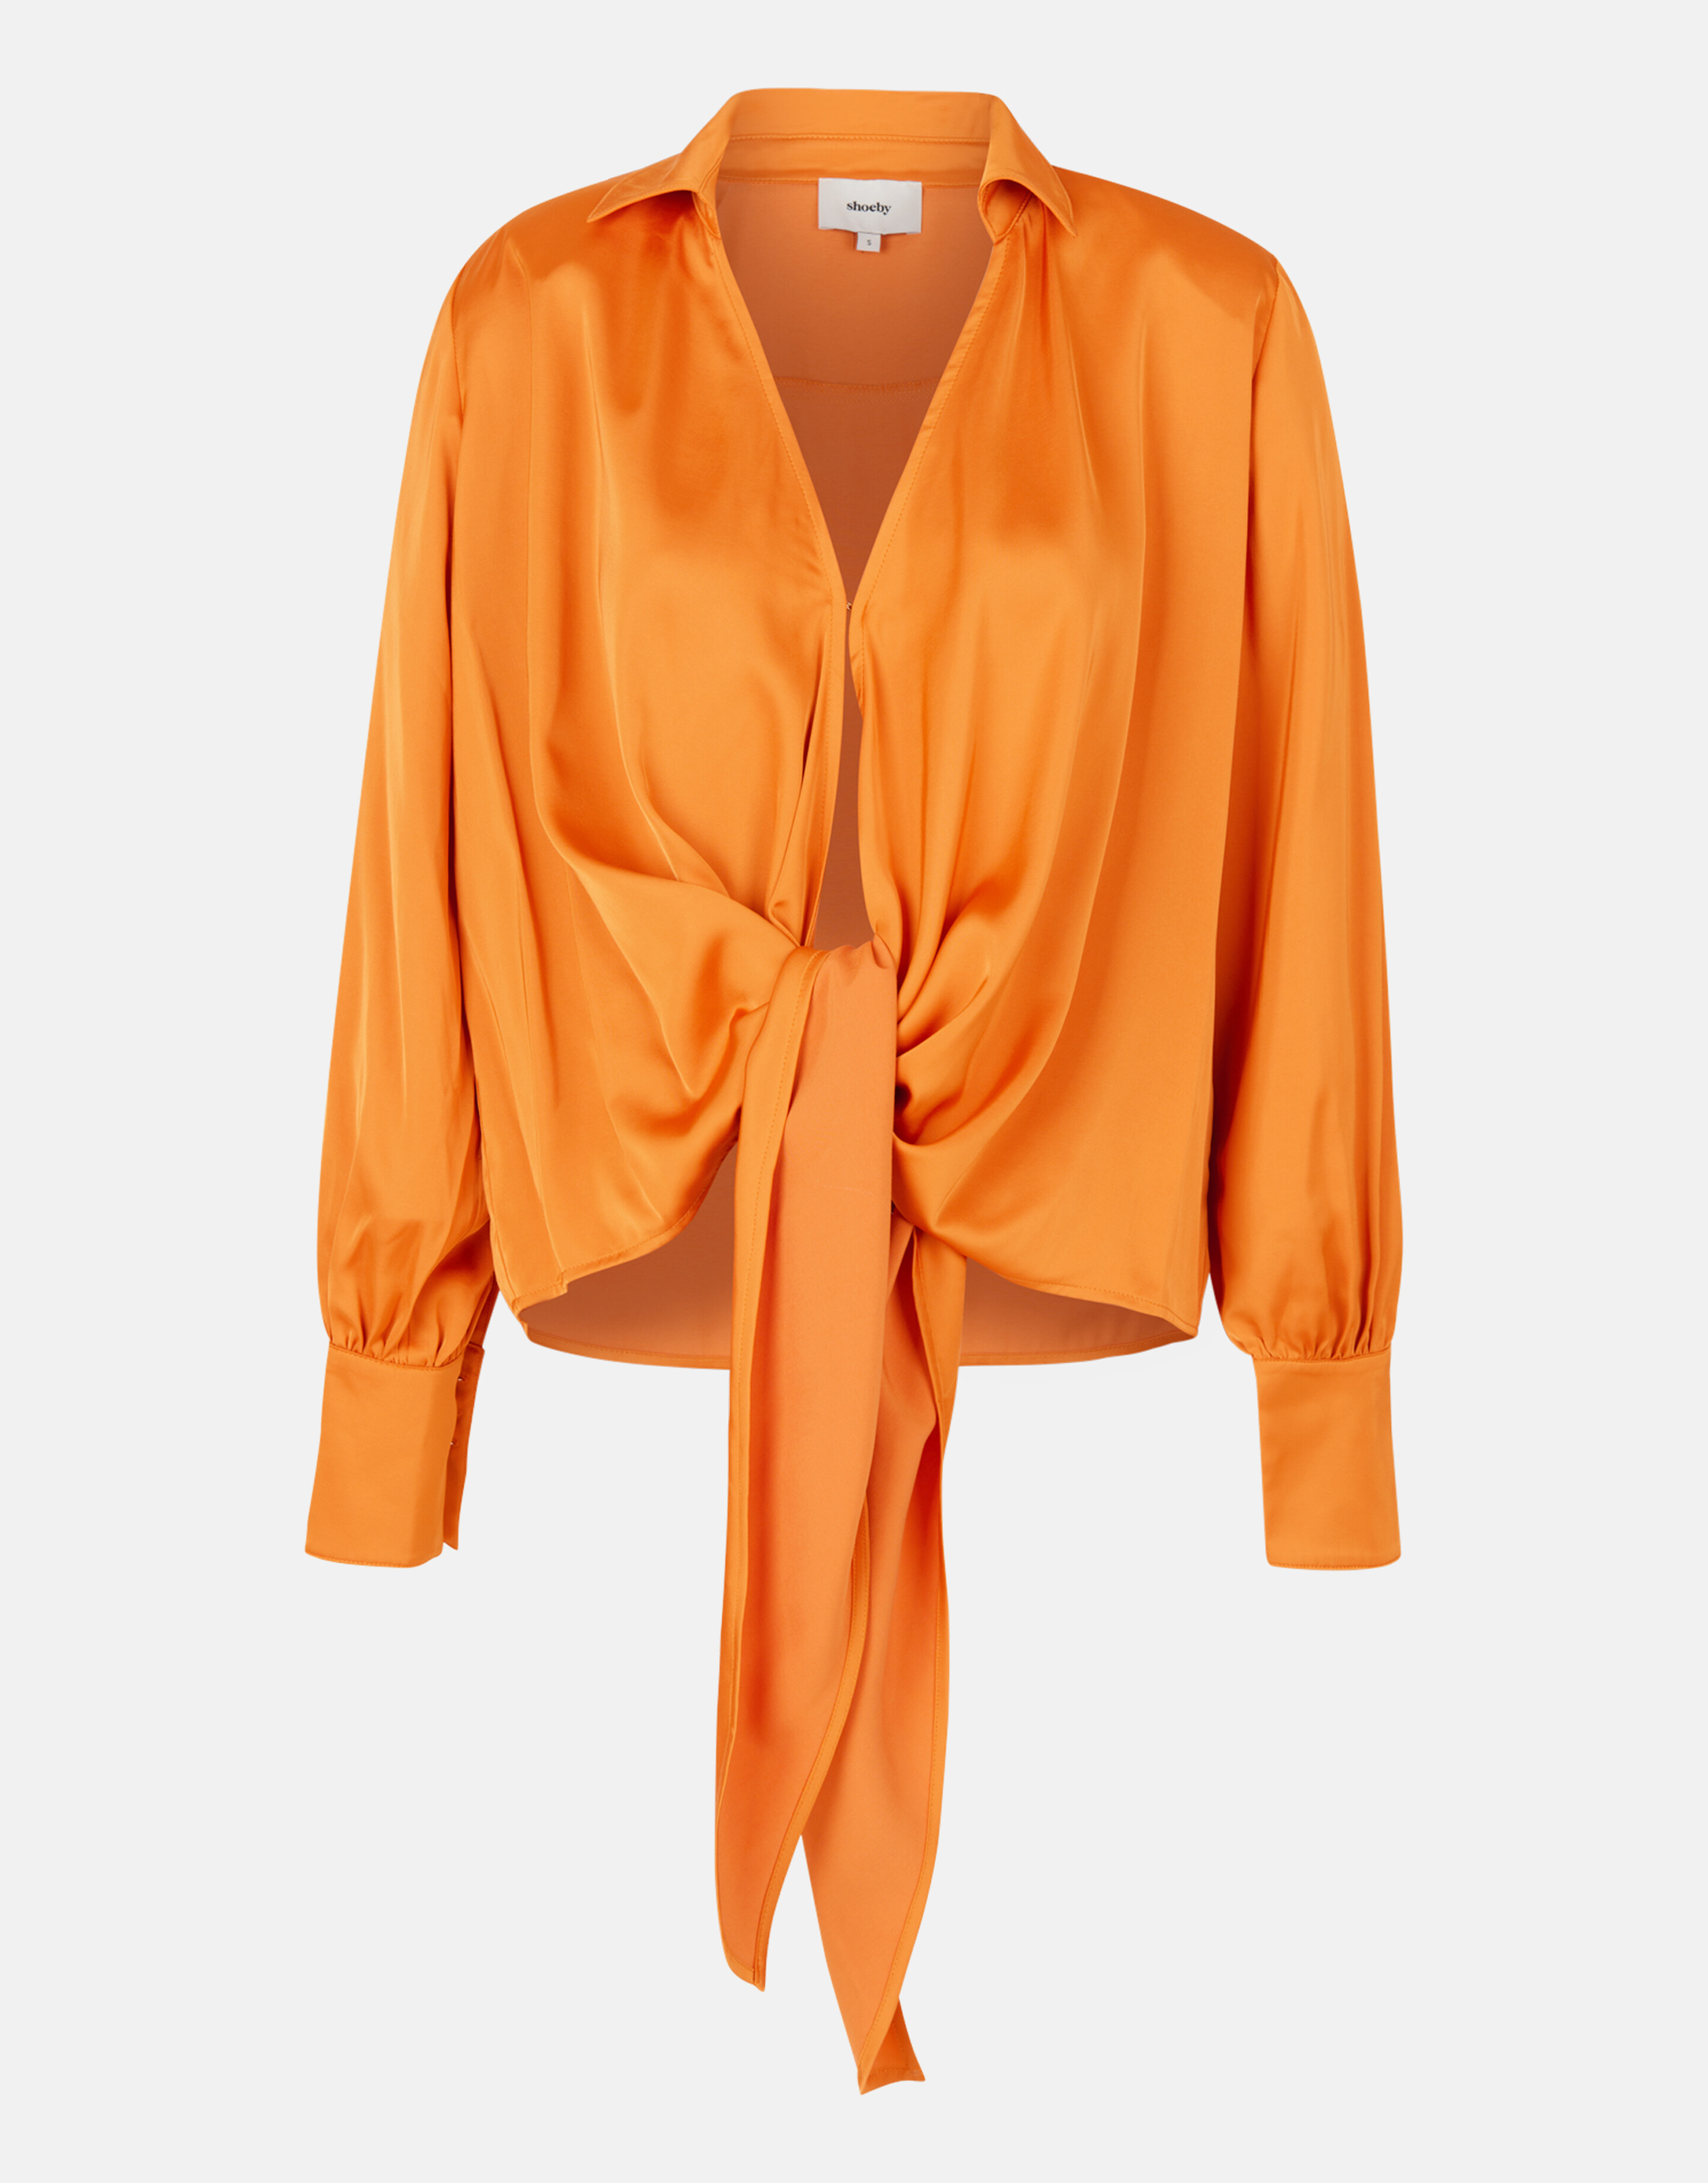 Satin-Bluse Orange By Mieke SHOEBY WOMEN